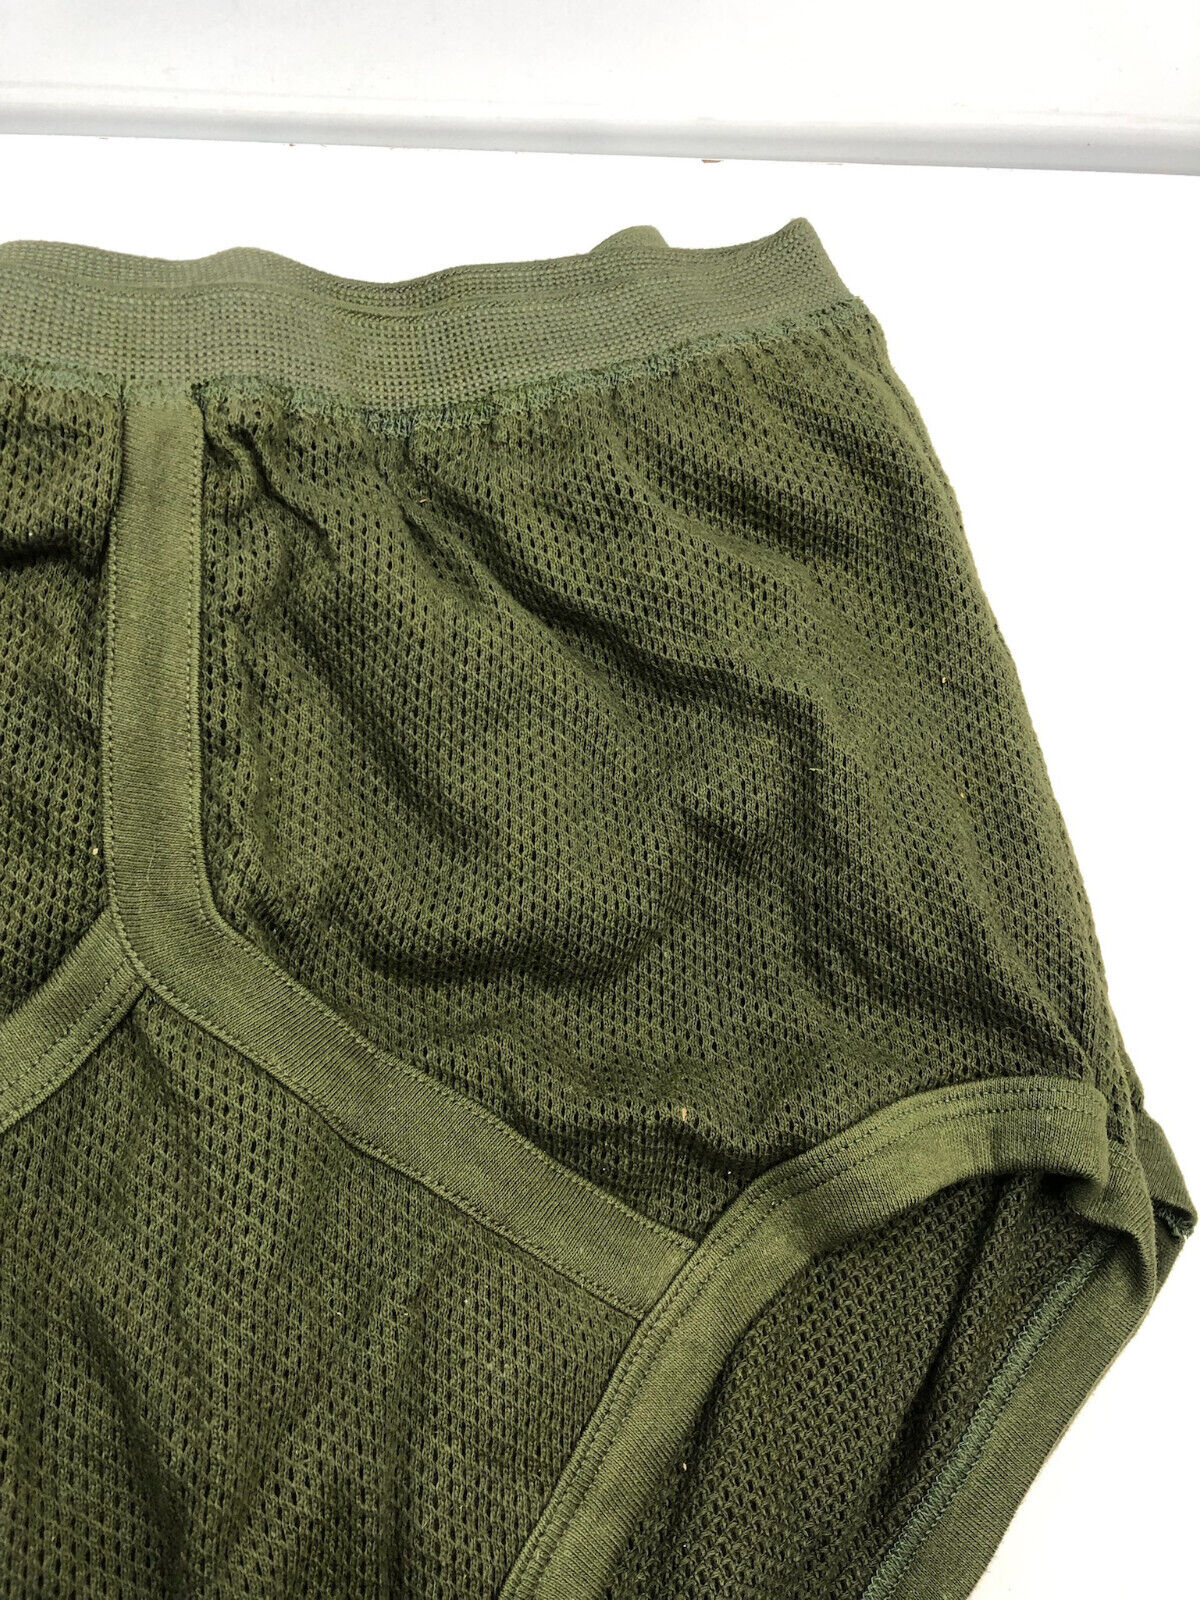 Drawers (underwear): O/Rs, British Army